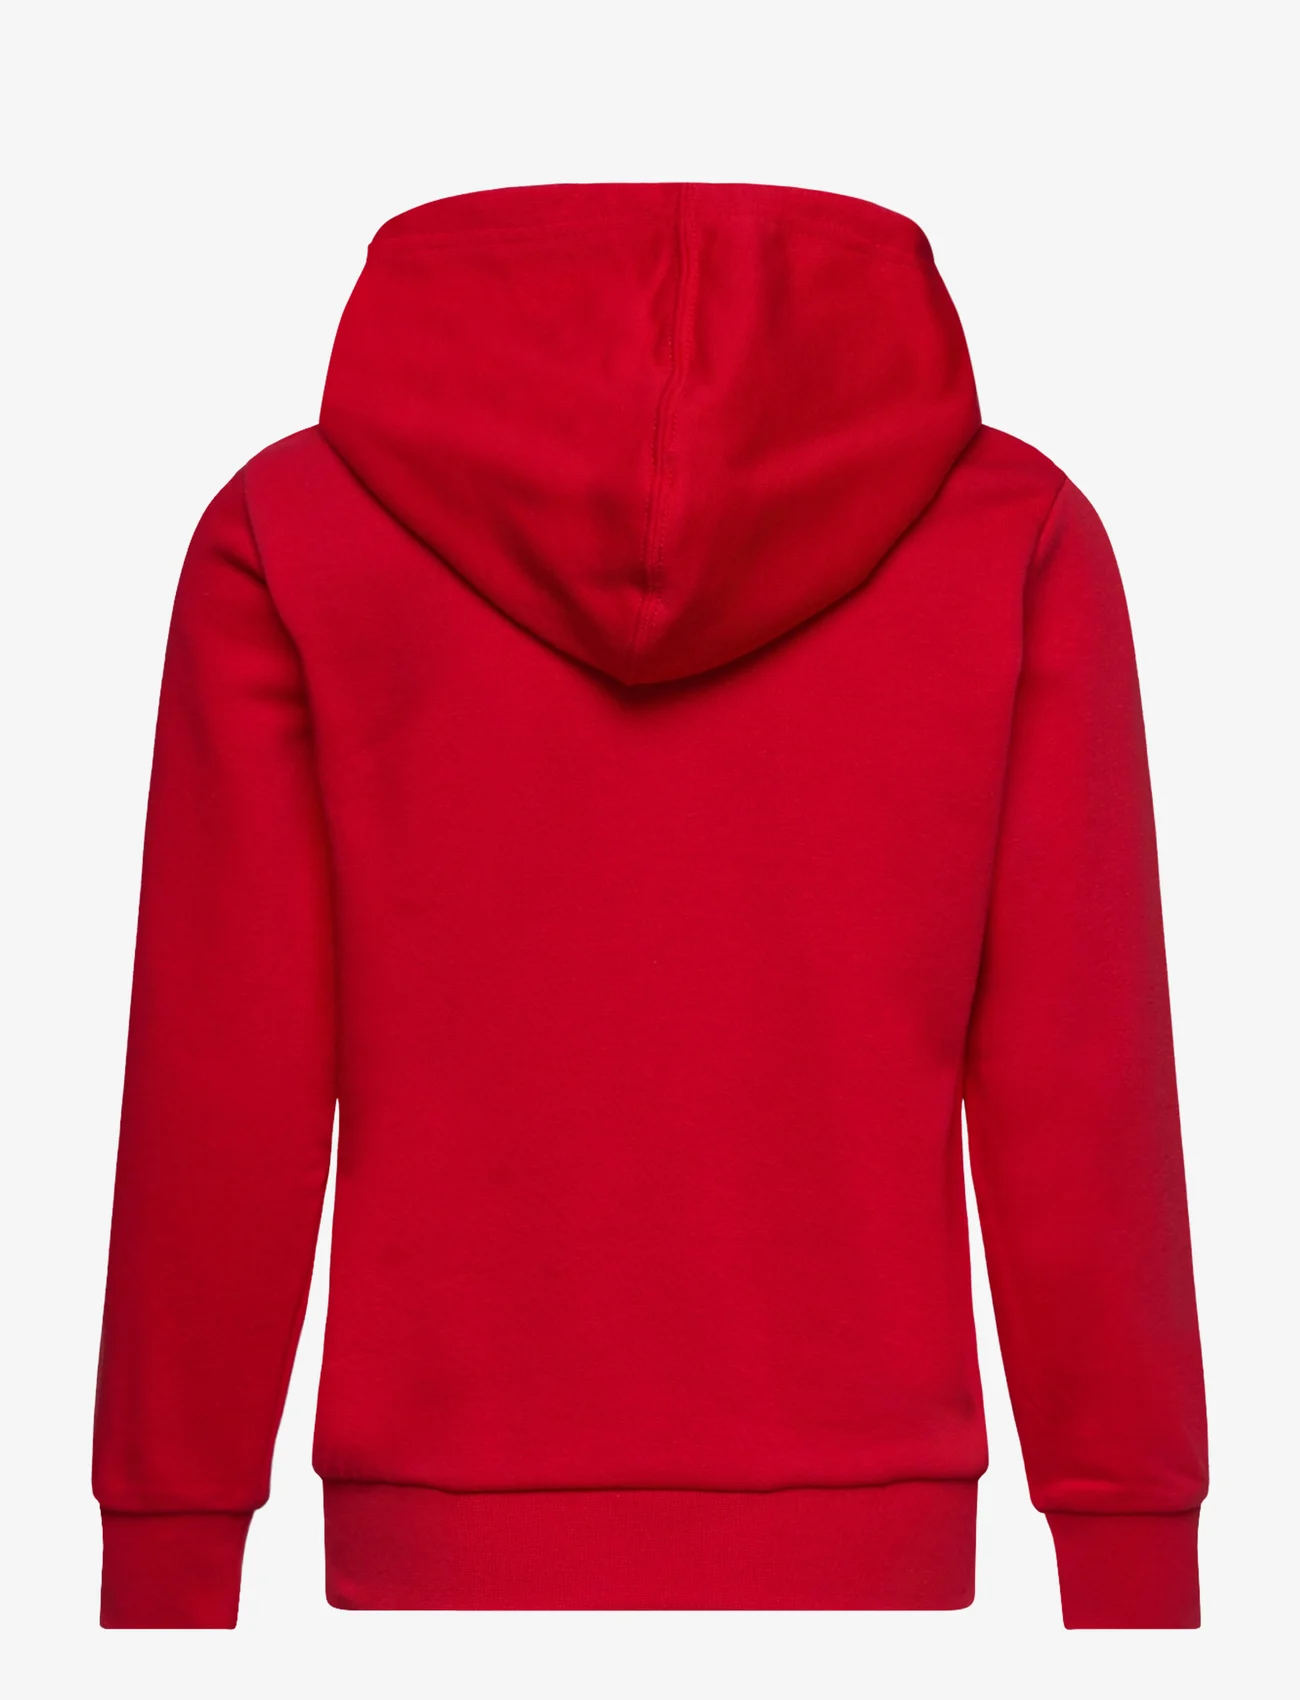 Champion - Hooded Sweatshirt - bluzy z kapturem - true red - 1